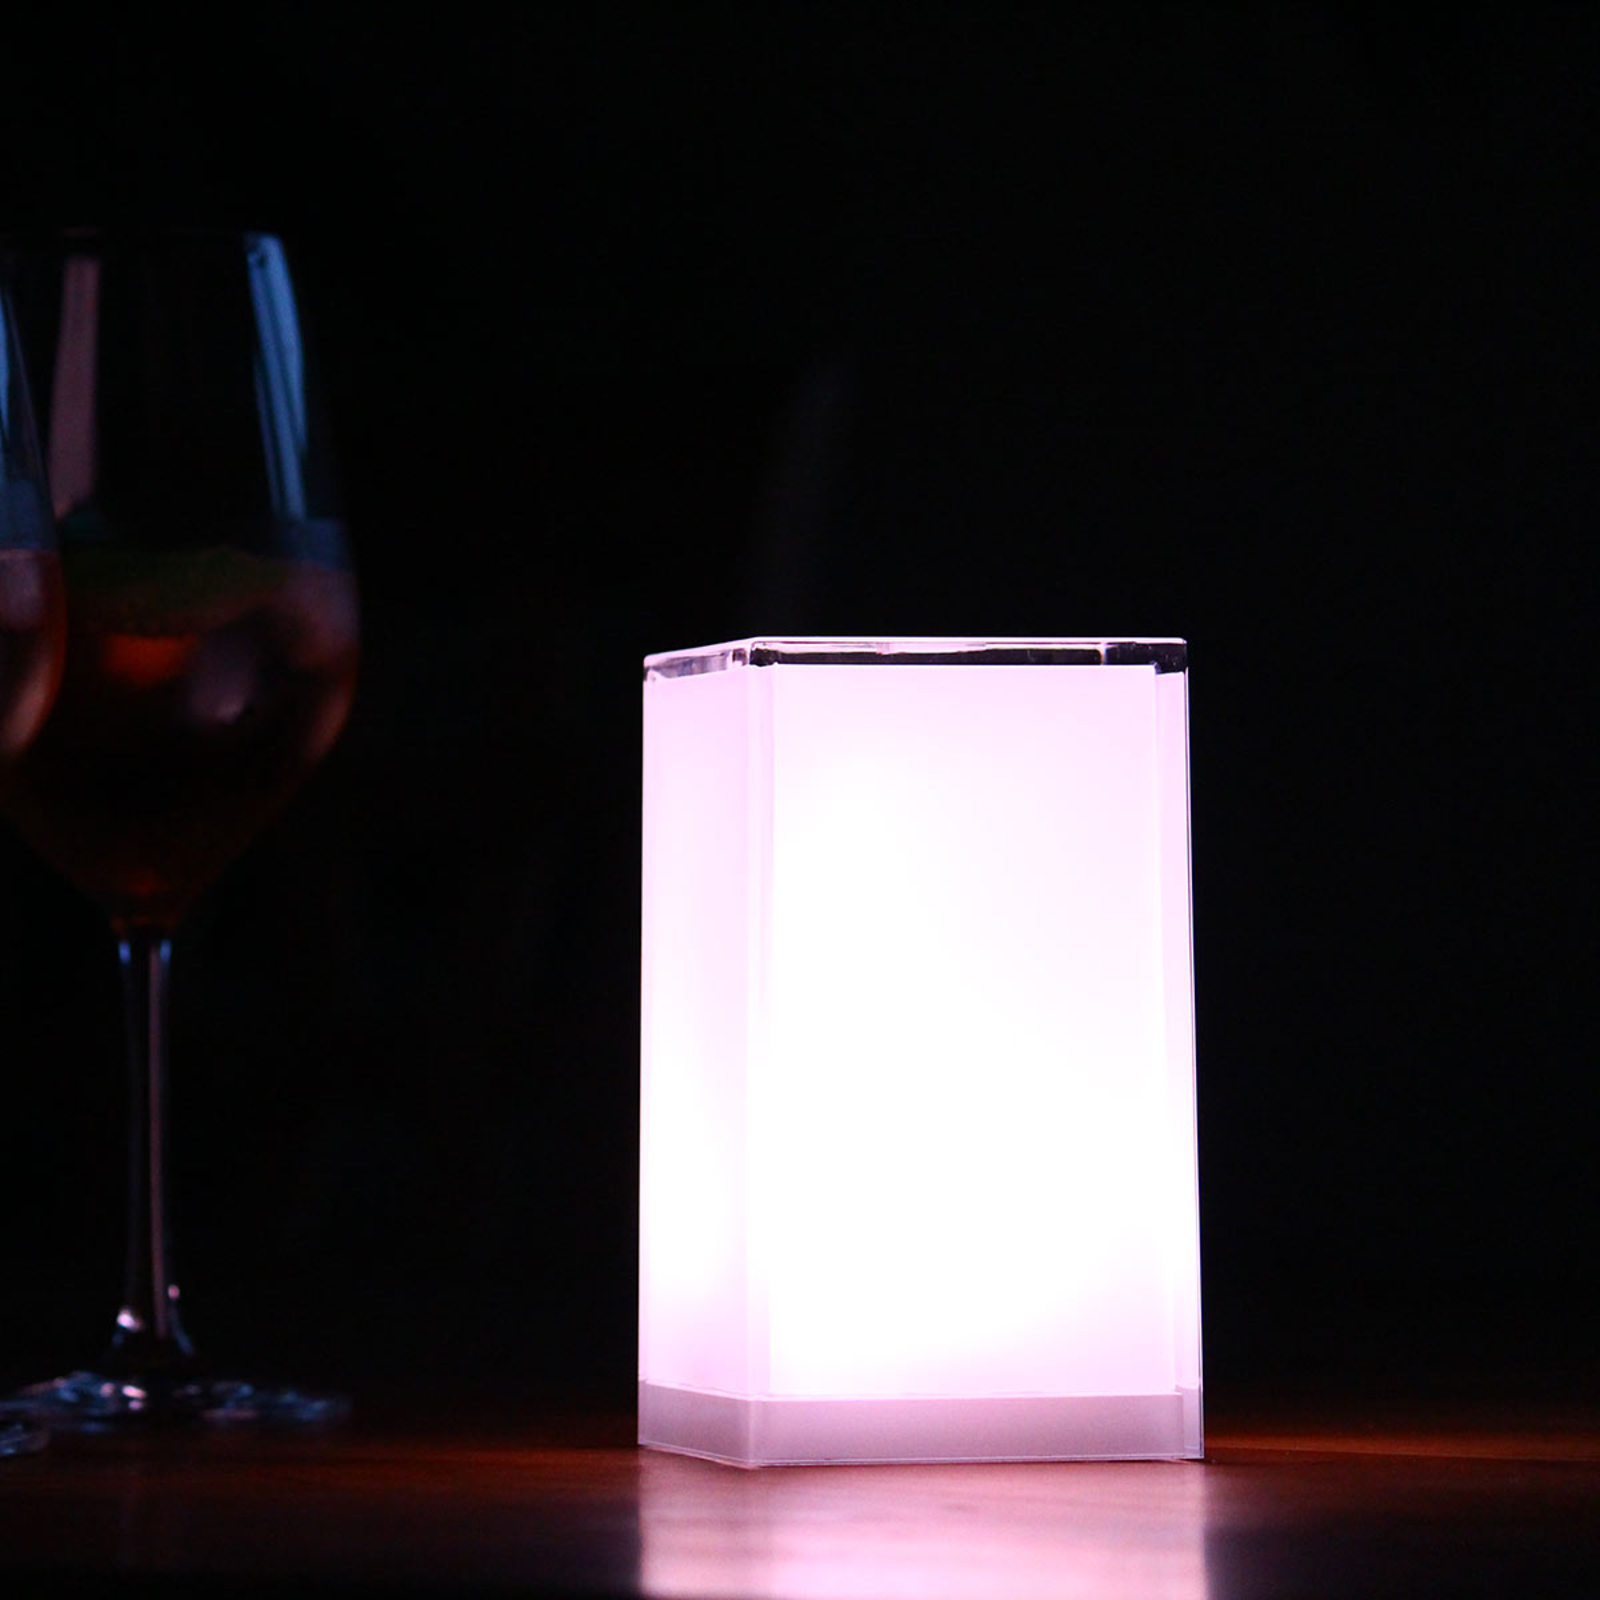 Hordozható asztali lámpa Cub, alkalmazással vezérelhető, RGBW